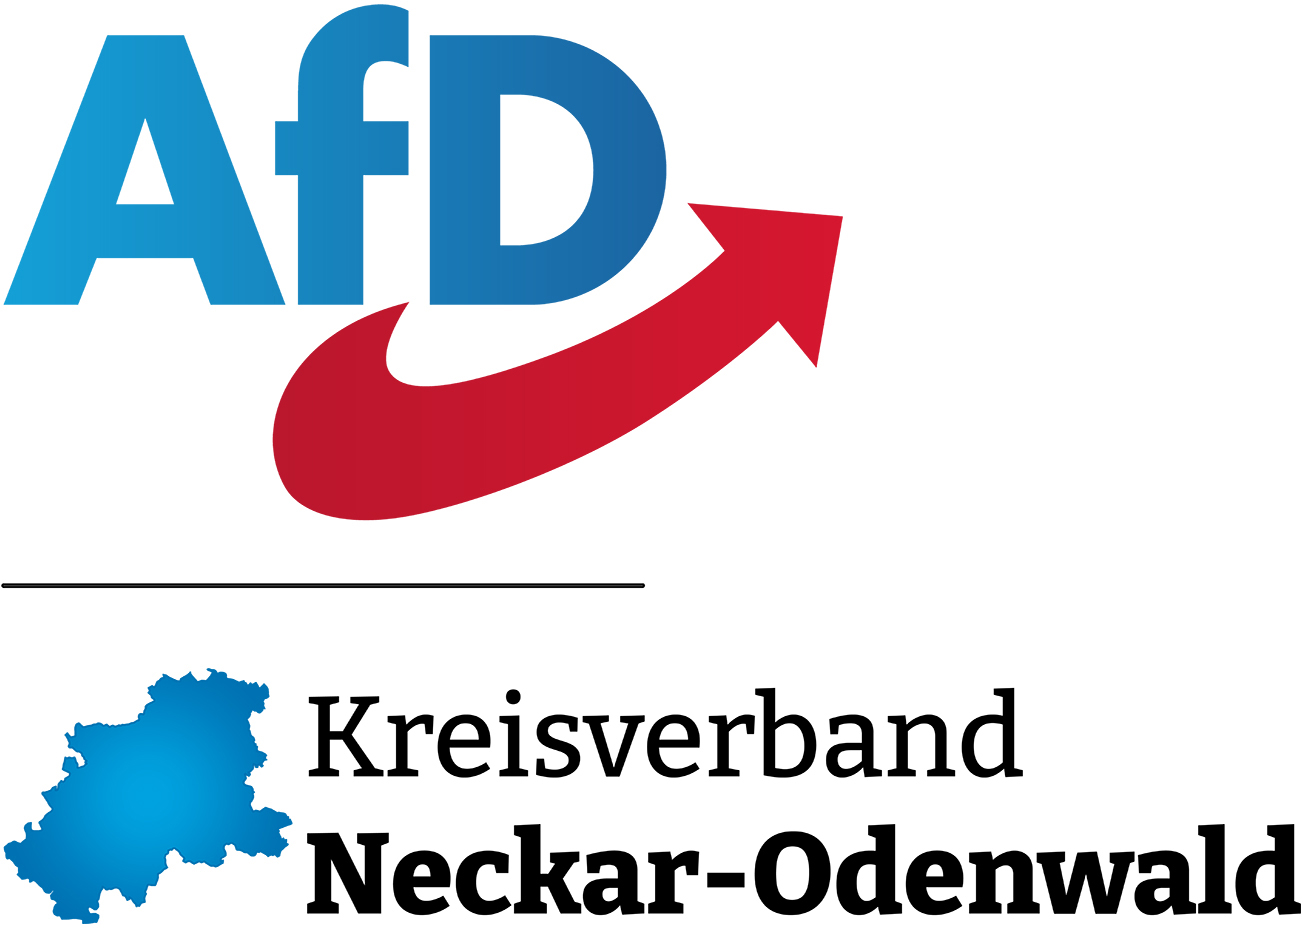 AfD Kreisverband Logo